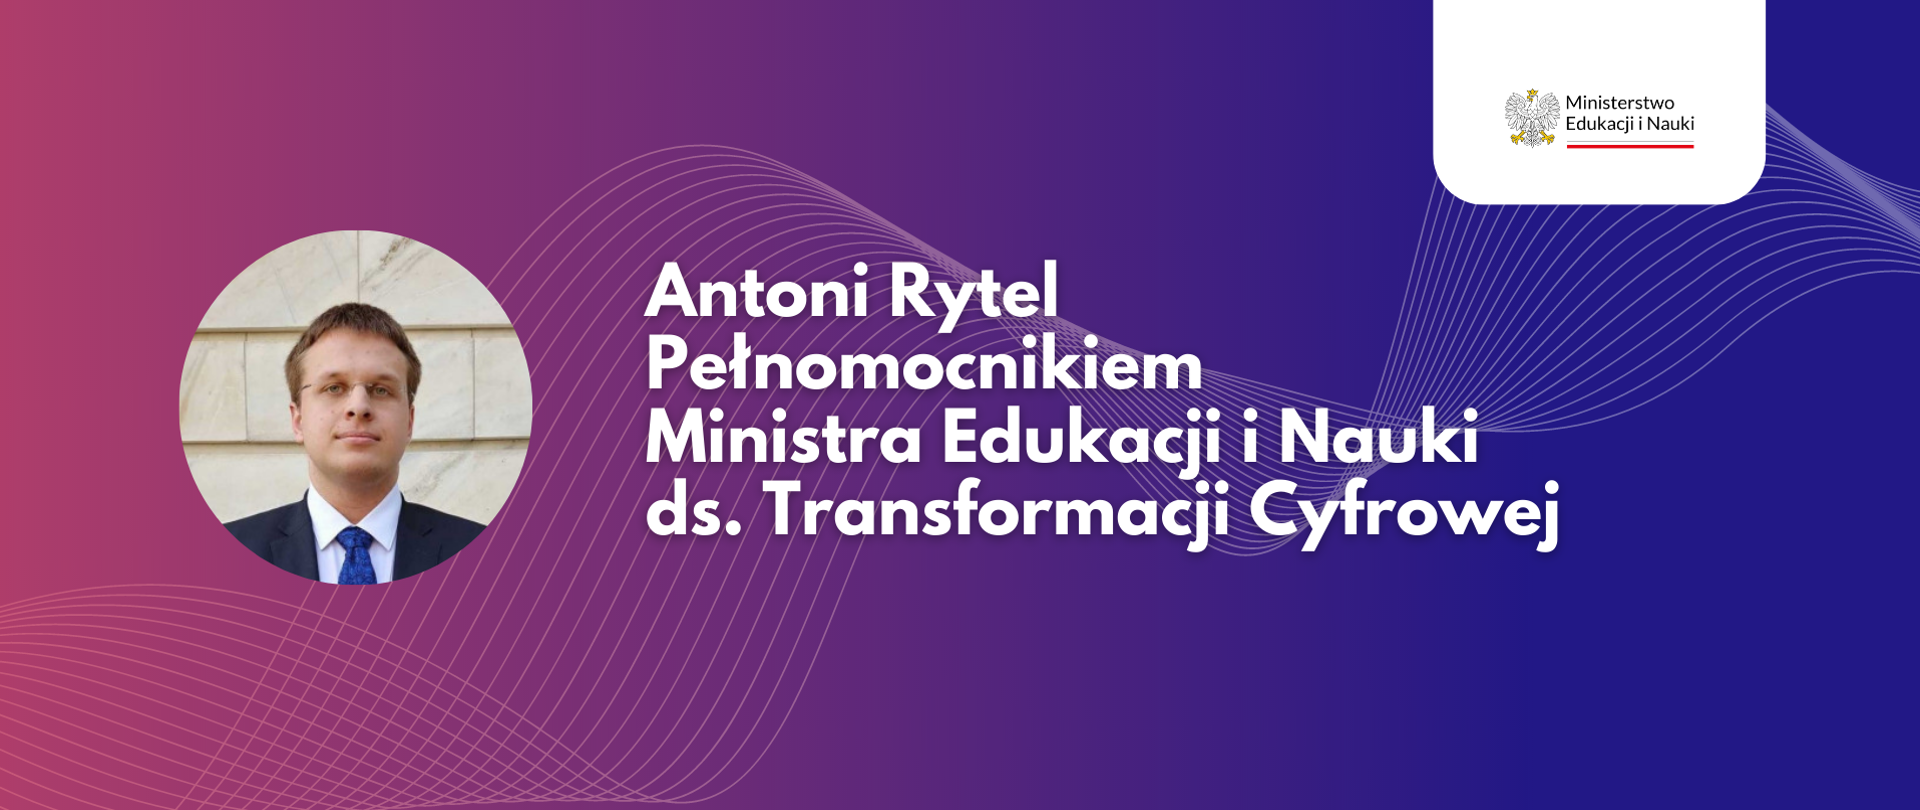 Po prawej napis: Antoni Rytel Pełnomocnikiem Ministra Edukacji i Nauki ds. transformacji cyfrowej
Po lewej zdjęcie Antoniego Rytla.
W prawym górnym rogu logo Ministerstwa Edukacji i Nauki.